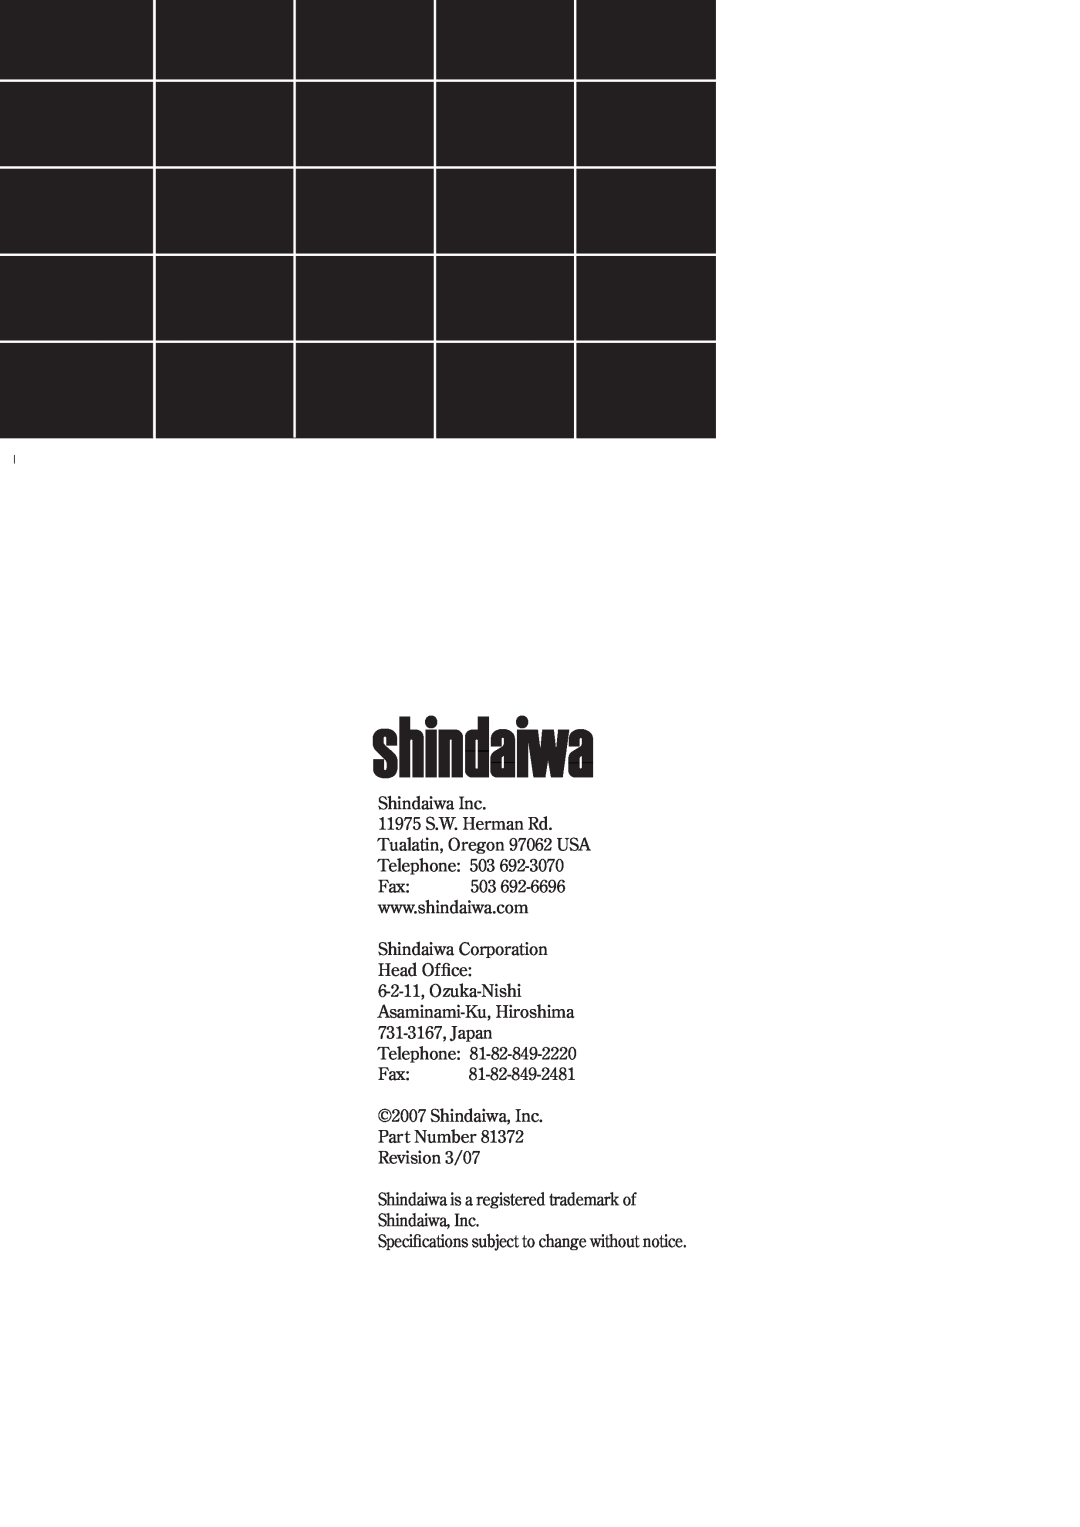 Shindaiwa T222, F222, 81372 Shindaiwa Inc, Shindaiwa Corporation Head Office, 6-2-11, Ozuka-Nishi Asaminami-Ku,Hiroshima 